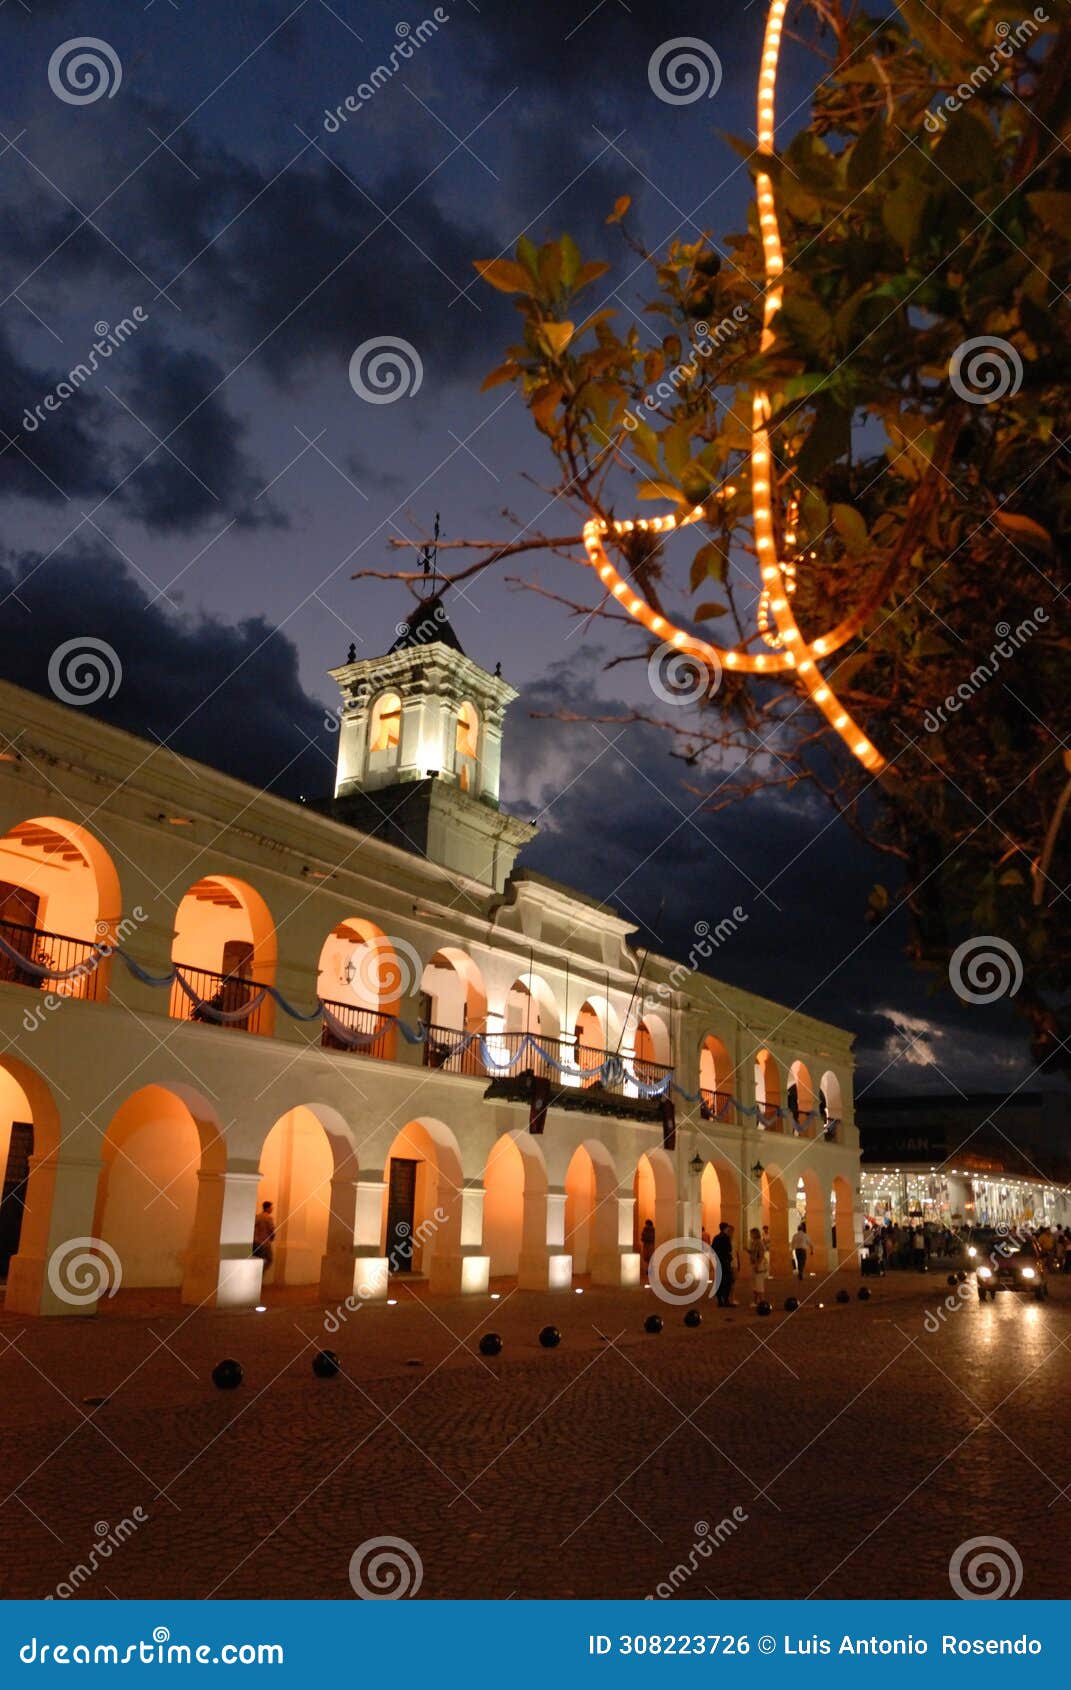 historic arquitecture of cabildo de salta 19th century arqentina